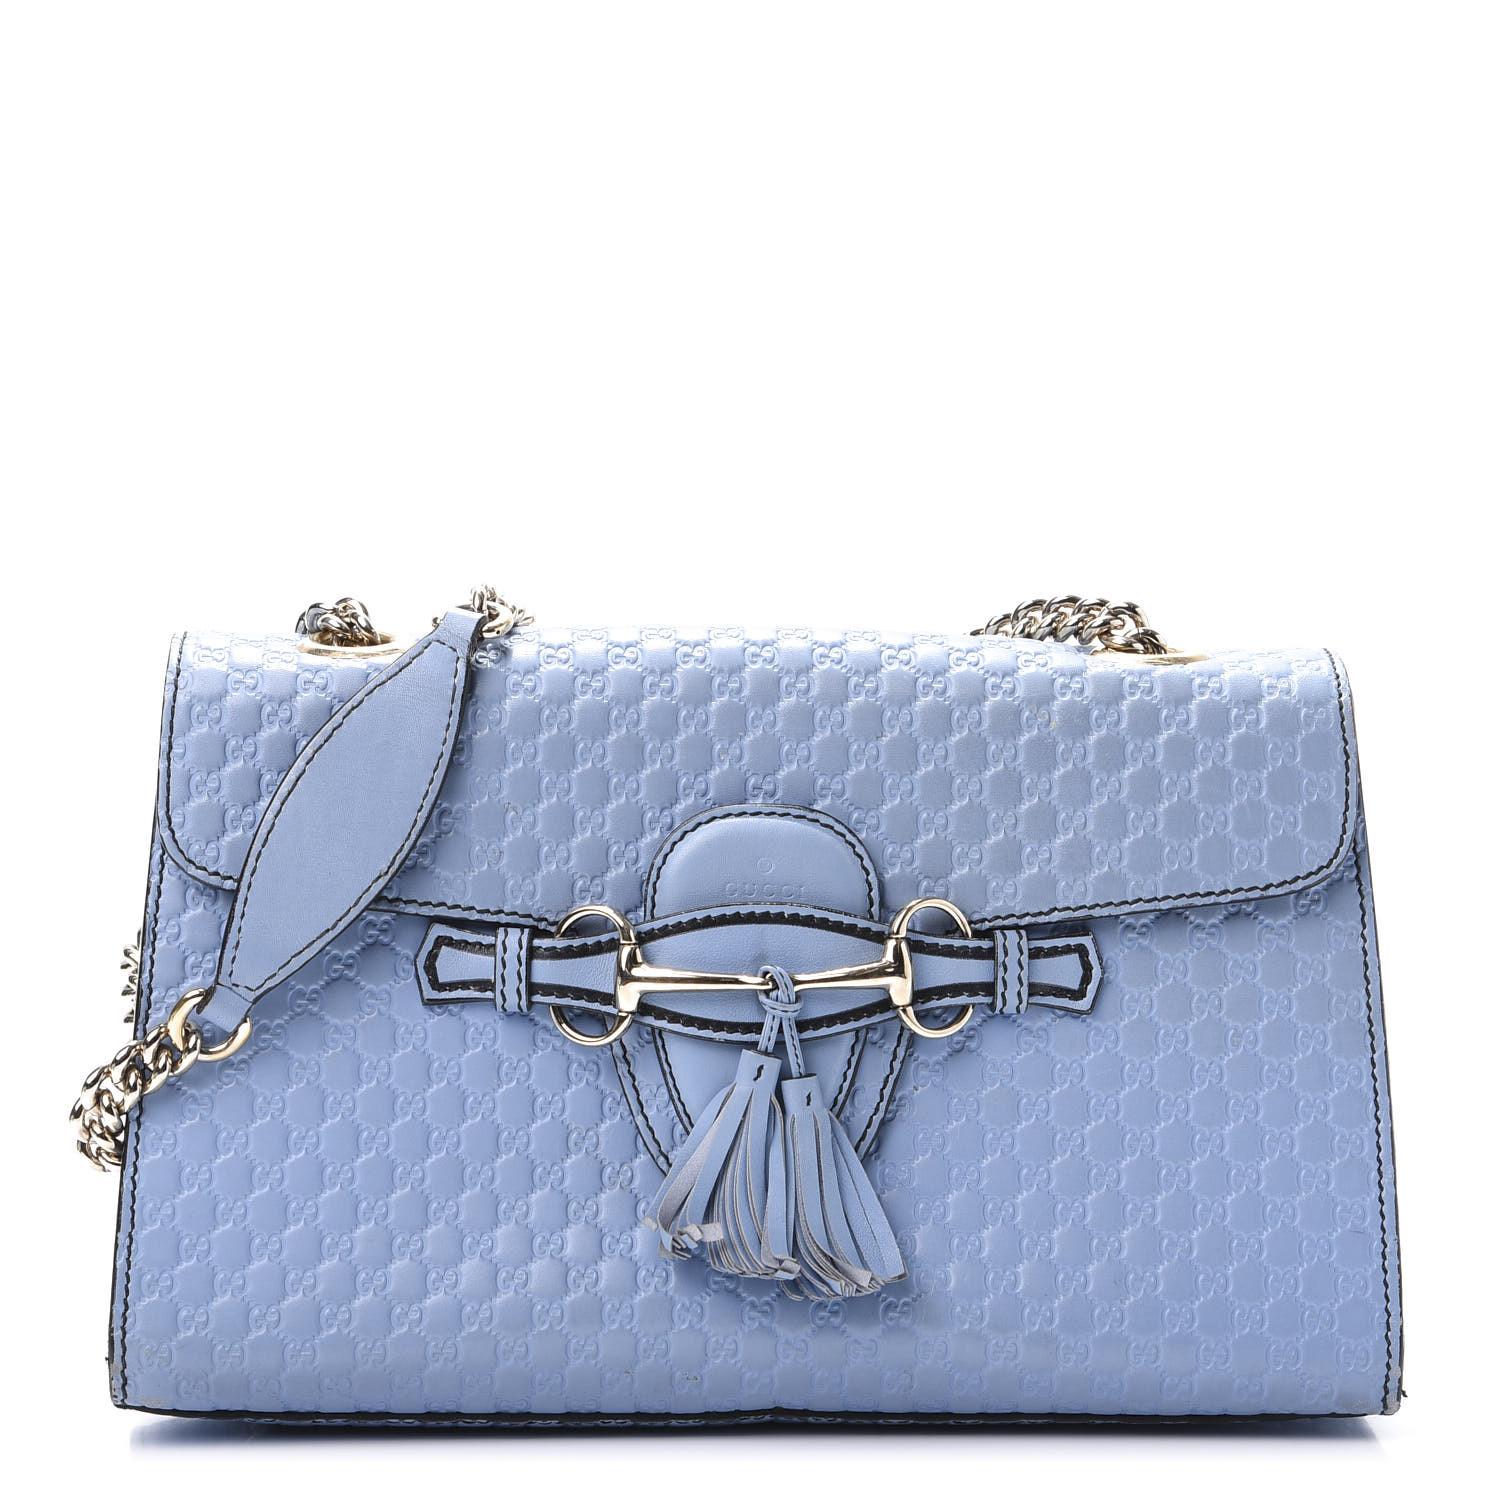 gucci handbag blue